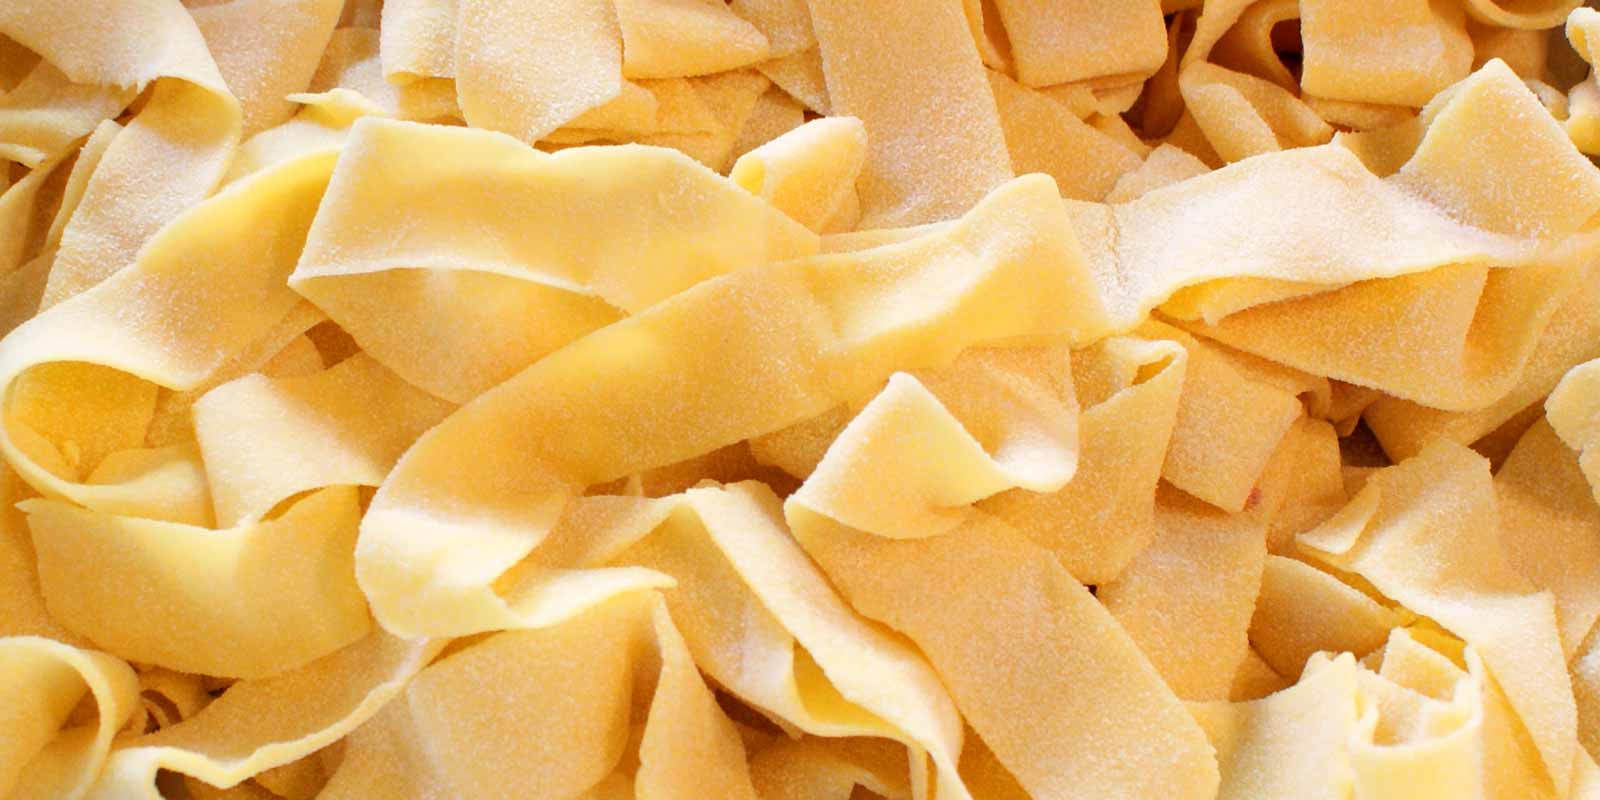 De Cecco pastaa ja jauhoja Italialainen yritys De Cecco on valmistanut korkealaatuisia pastaa ja jauhoja vuodesta 1886 lahtien.
Katso itse!